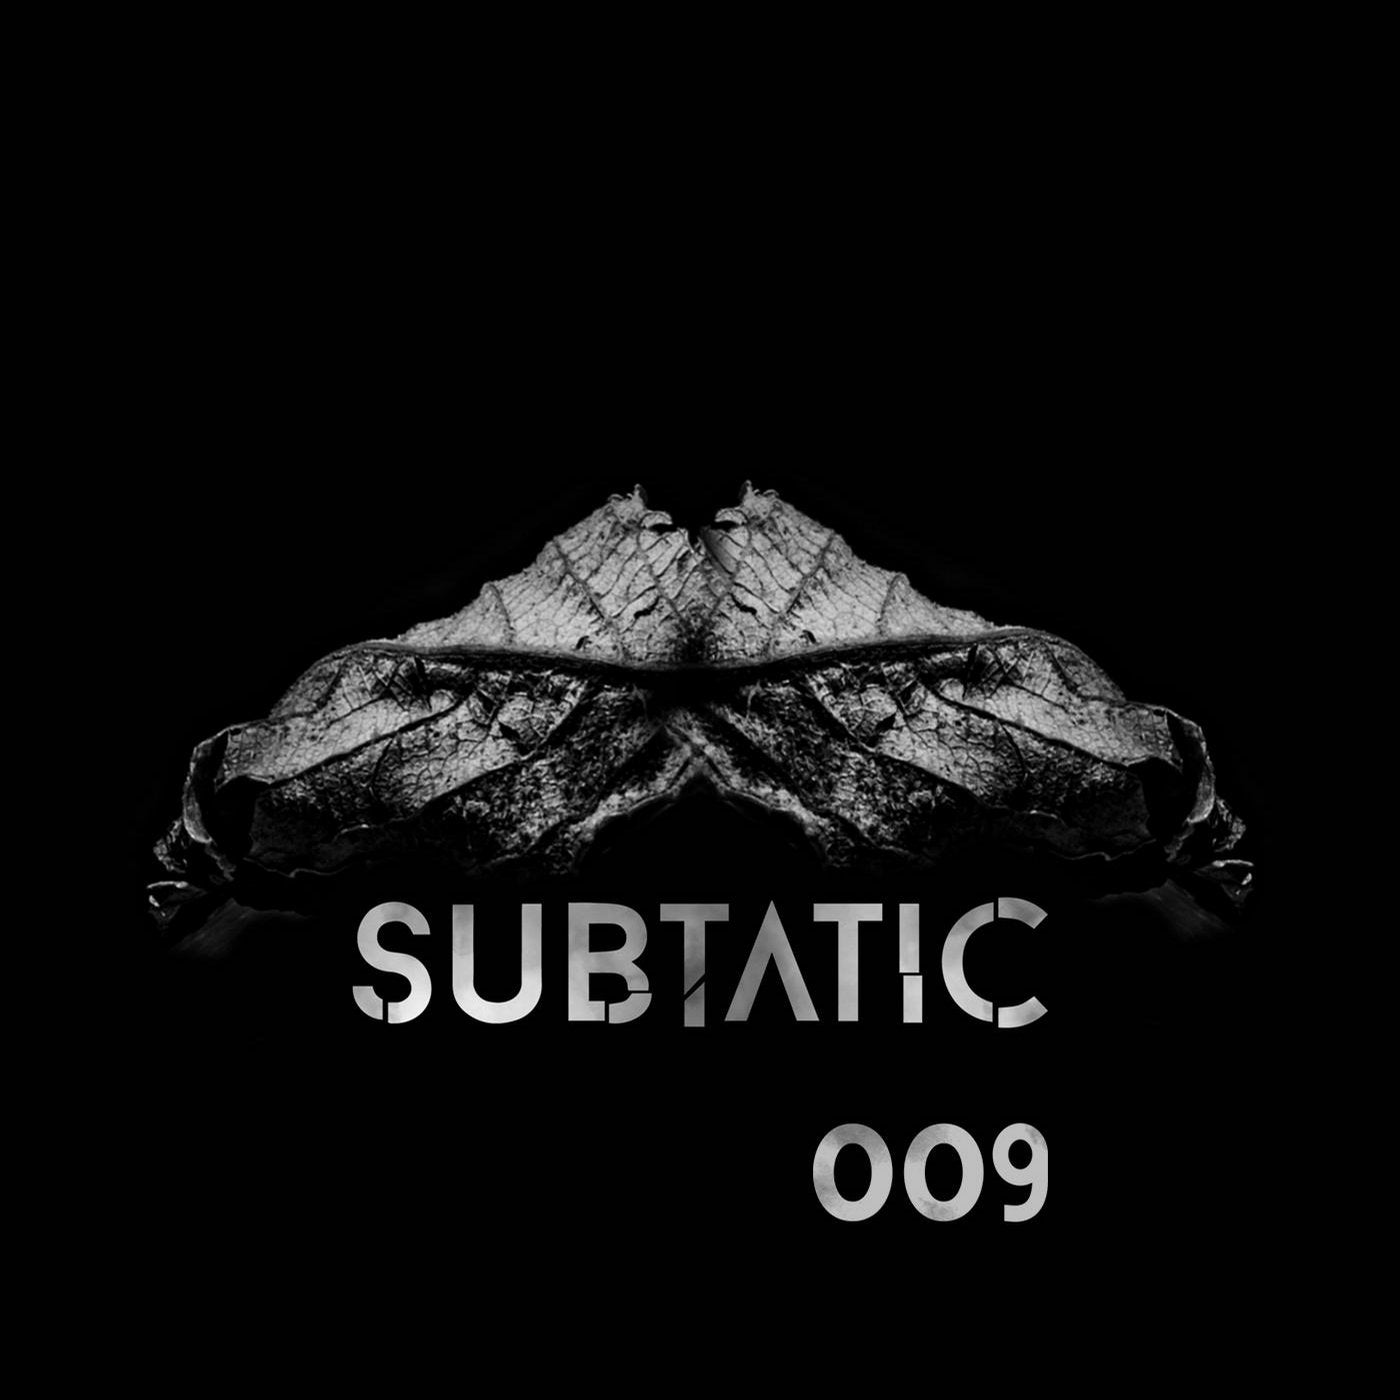 Subtatic 009